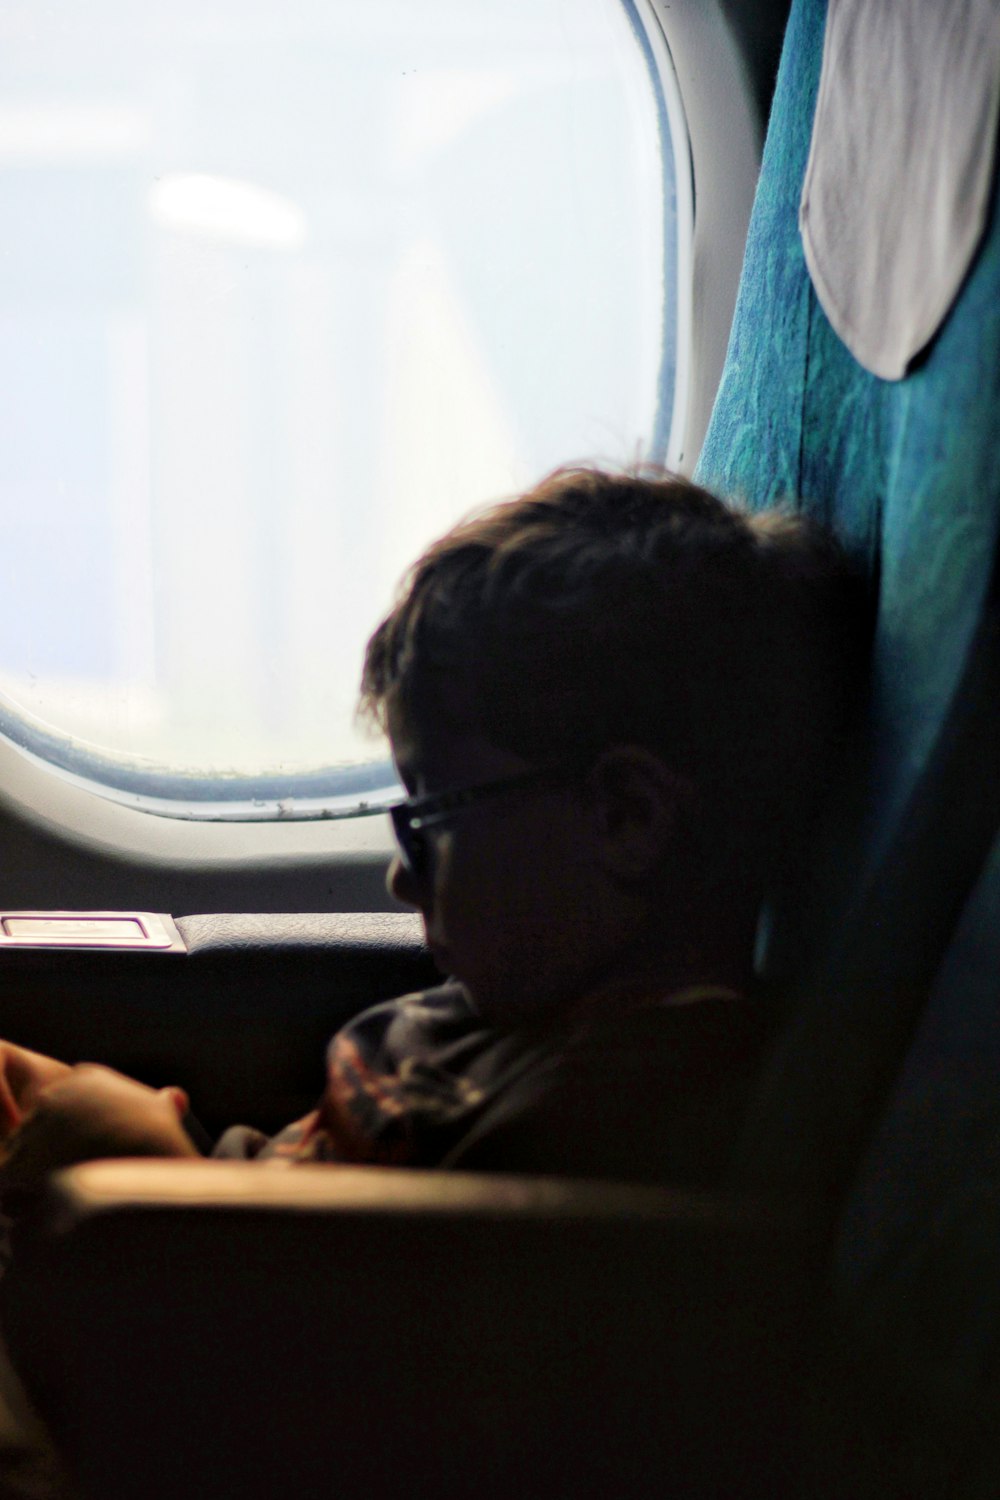 enfant en bas âge à l’intérieur d’un avion de ligne